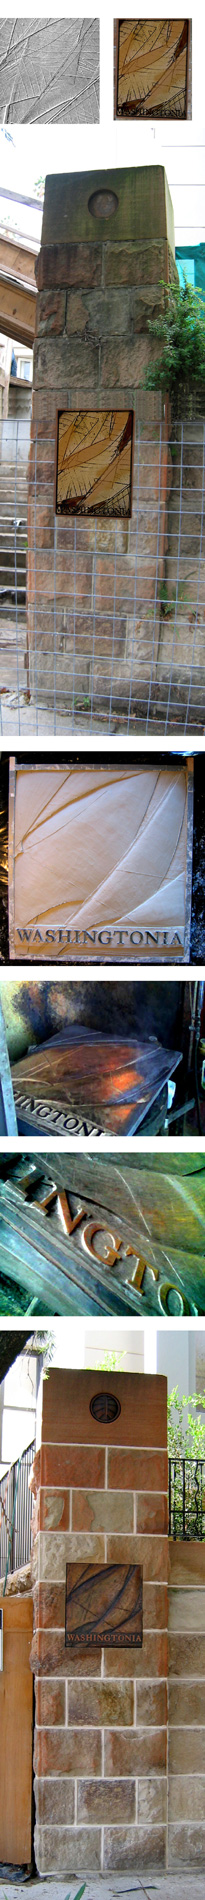 'Washingtonia' bas-relief